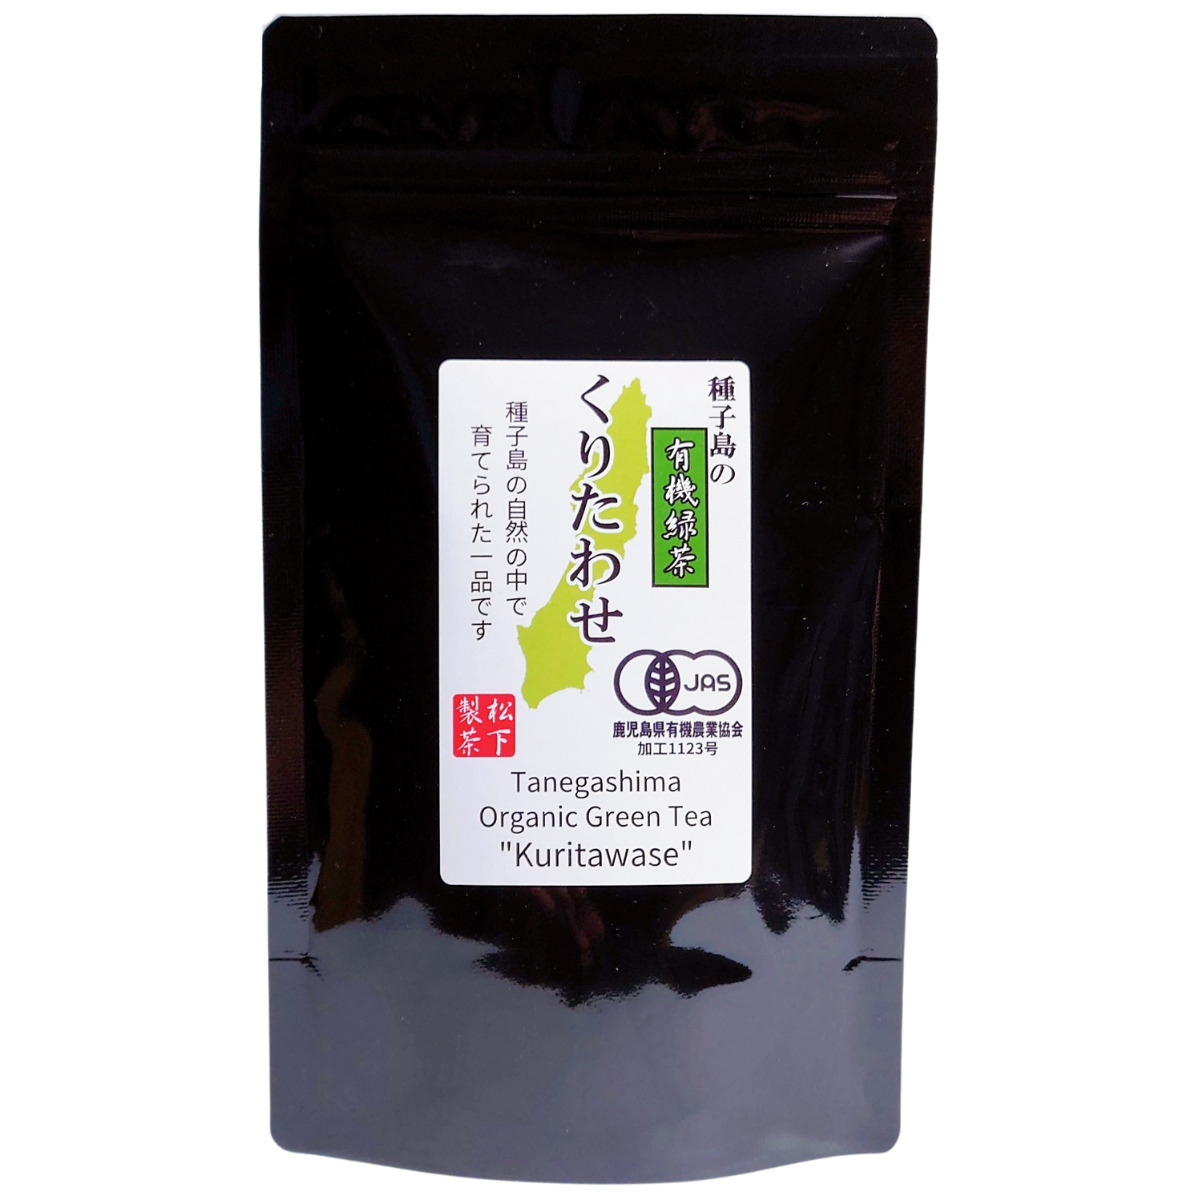 【希少品種】種子島の有機緑茶『くりたわせ』 茶葉(リーフ) 100g 松下製茶